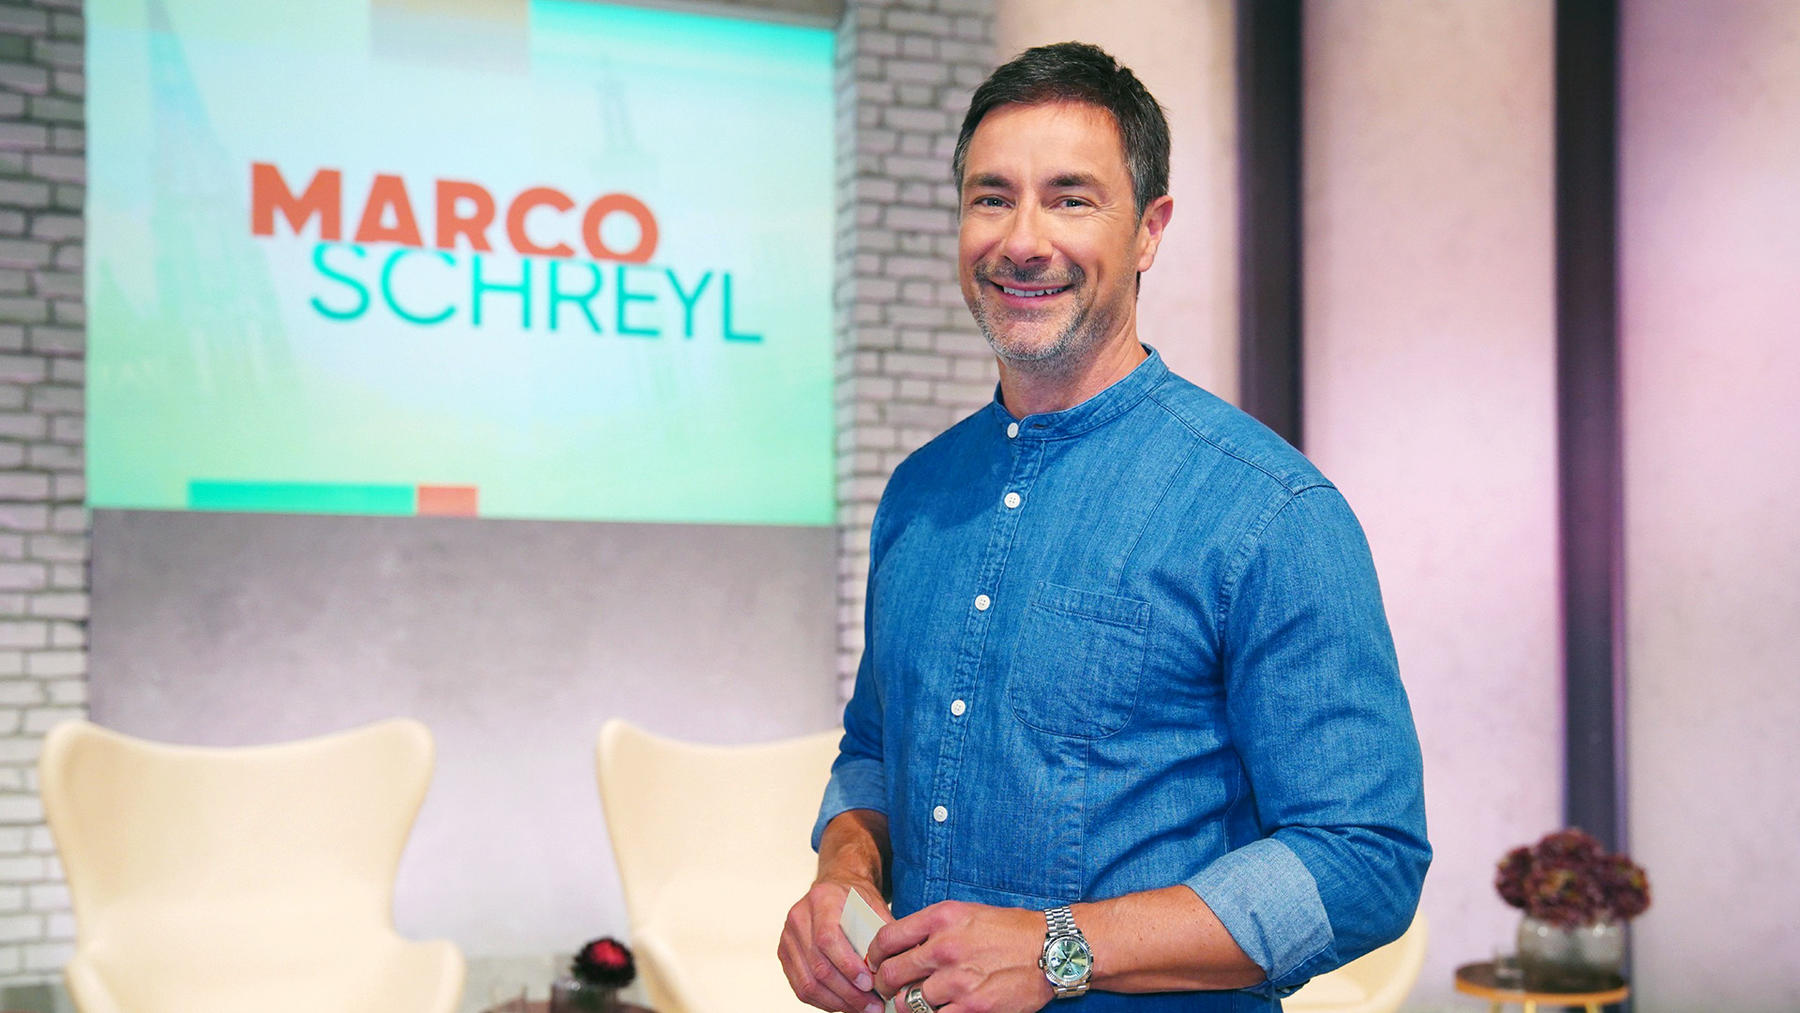 Folge 25 vom 13.03.2020 | Marco Schreyl | RTL+